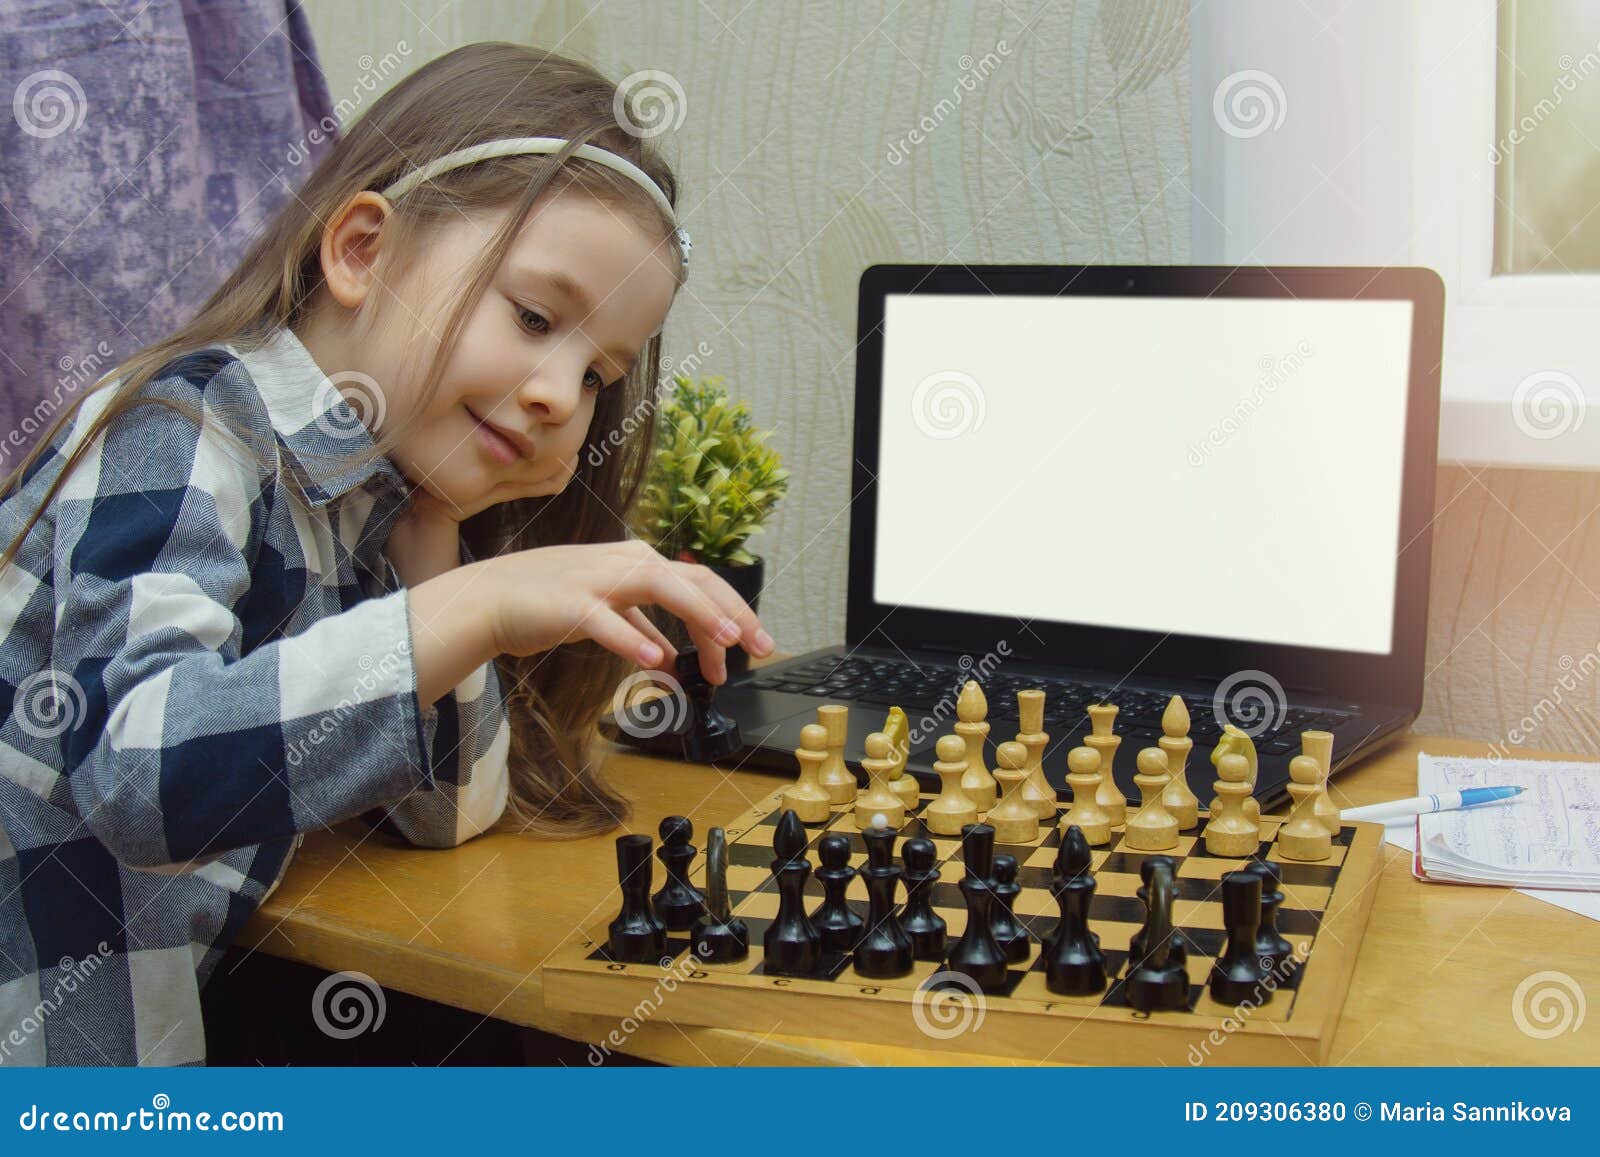 Online Schaakprogramma ' S Voor Kinderen. Met Een Chessboard En Laptop. Meisje Speelt Schaak Op Games Voor Stock Foto - Image kinderen, controleurs: 209306380